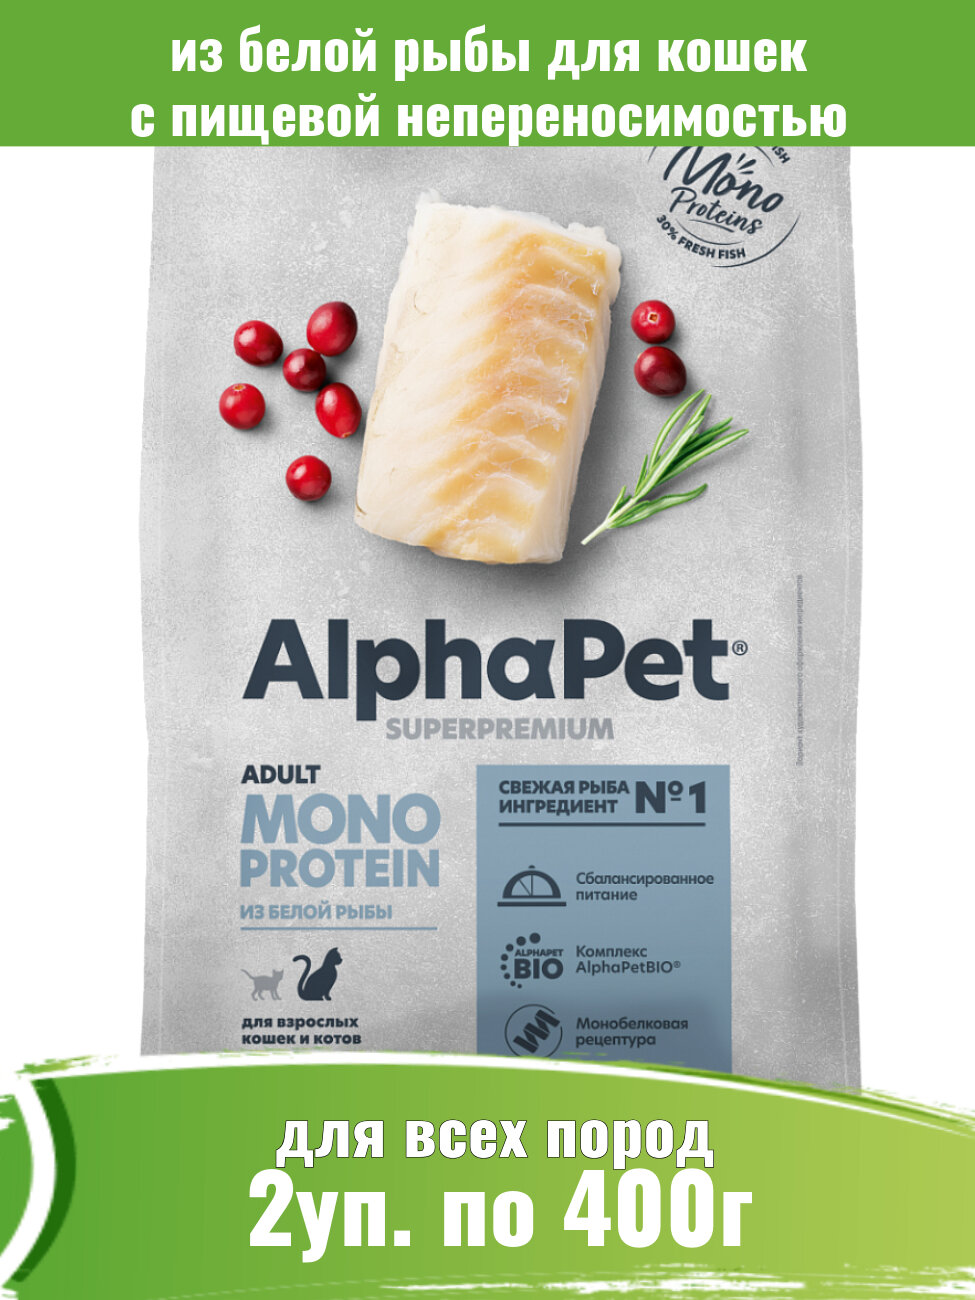 AlphaPet Сухой корм для взрослых кошек из белой рыбы Monoprotein, Superpremium, 400 г, 2 штуки